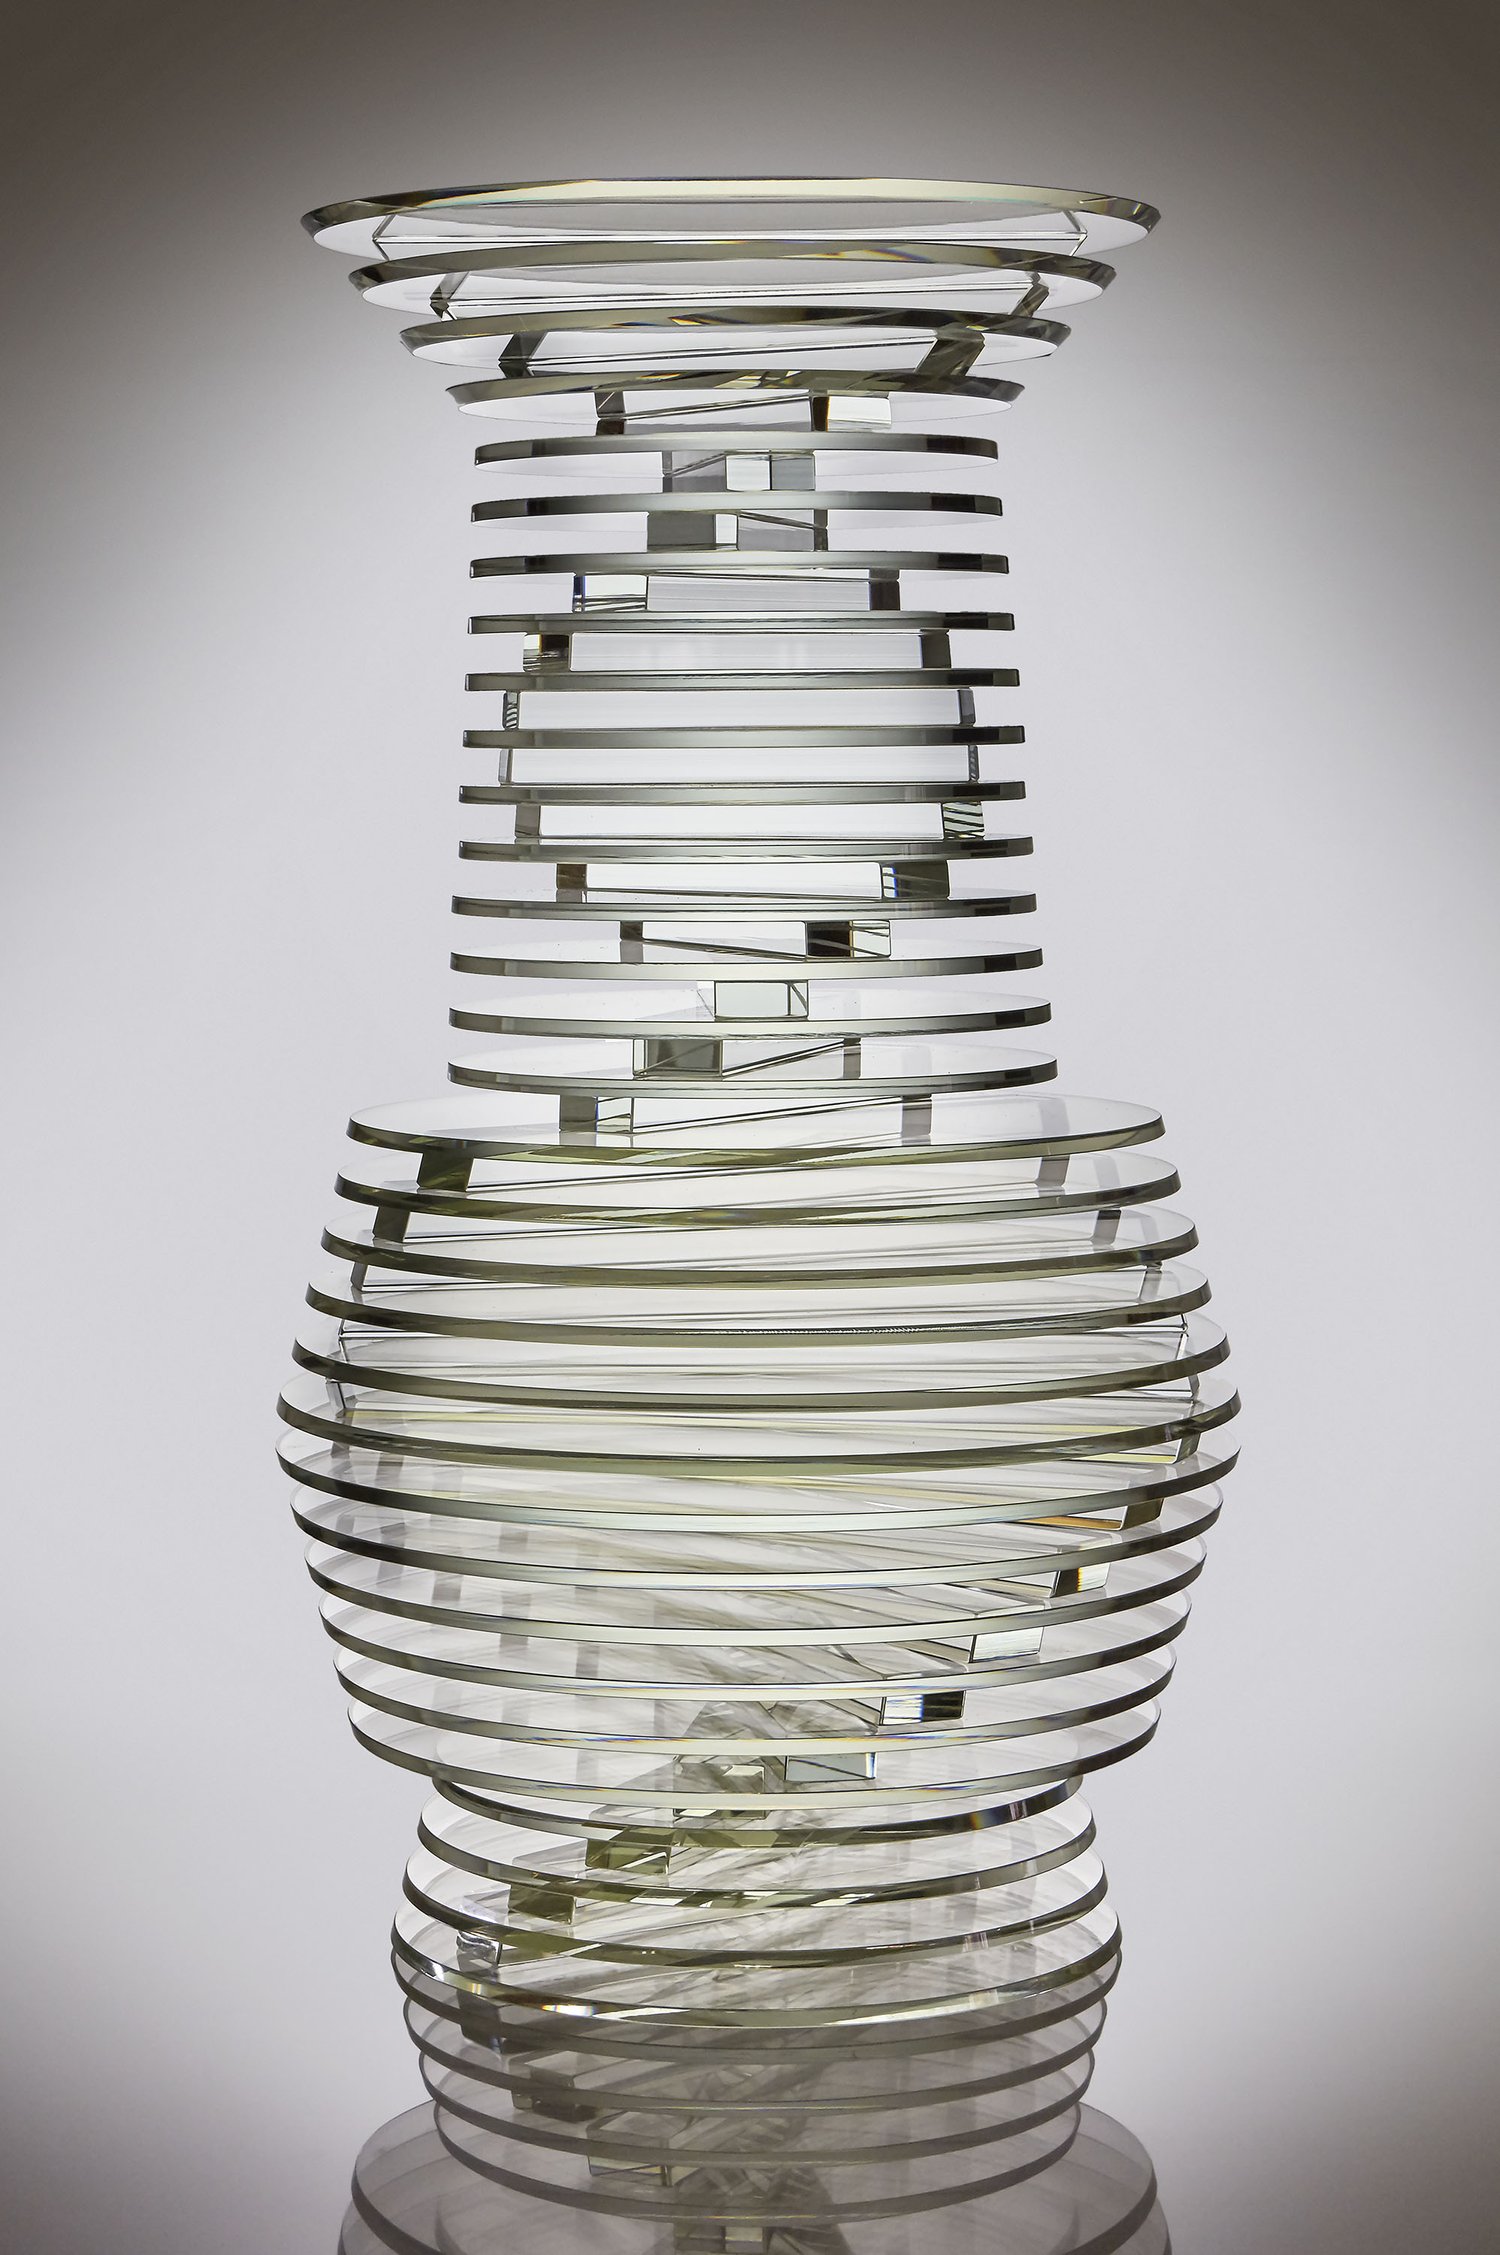 Carlo Scarpa's pioneering glassware at The Met, architecture, Agenda